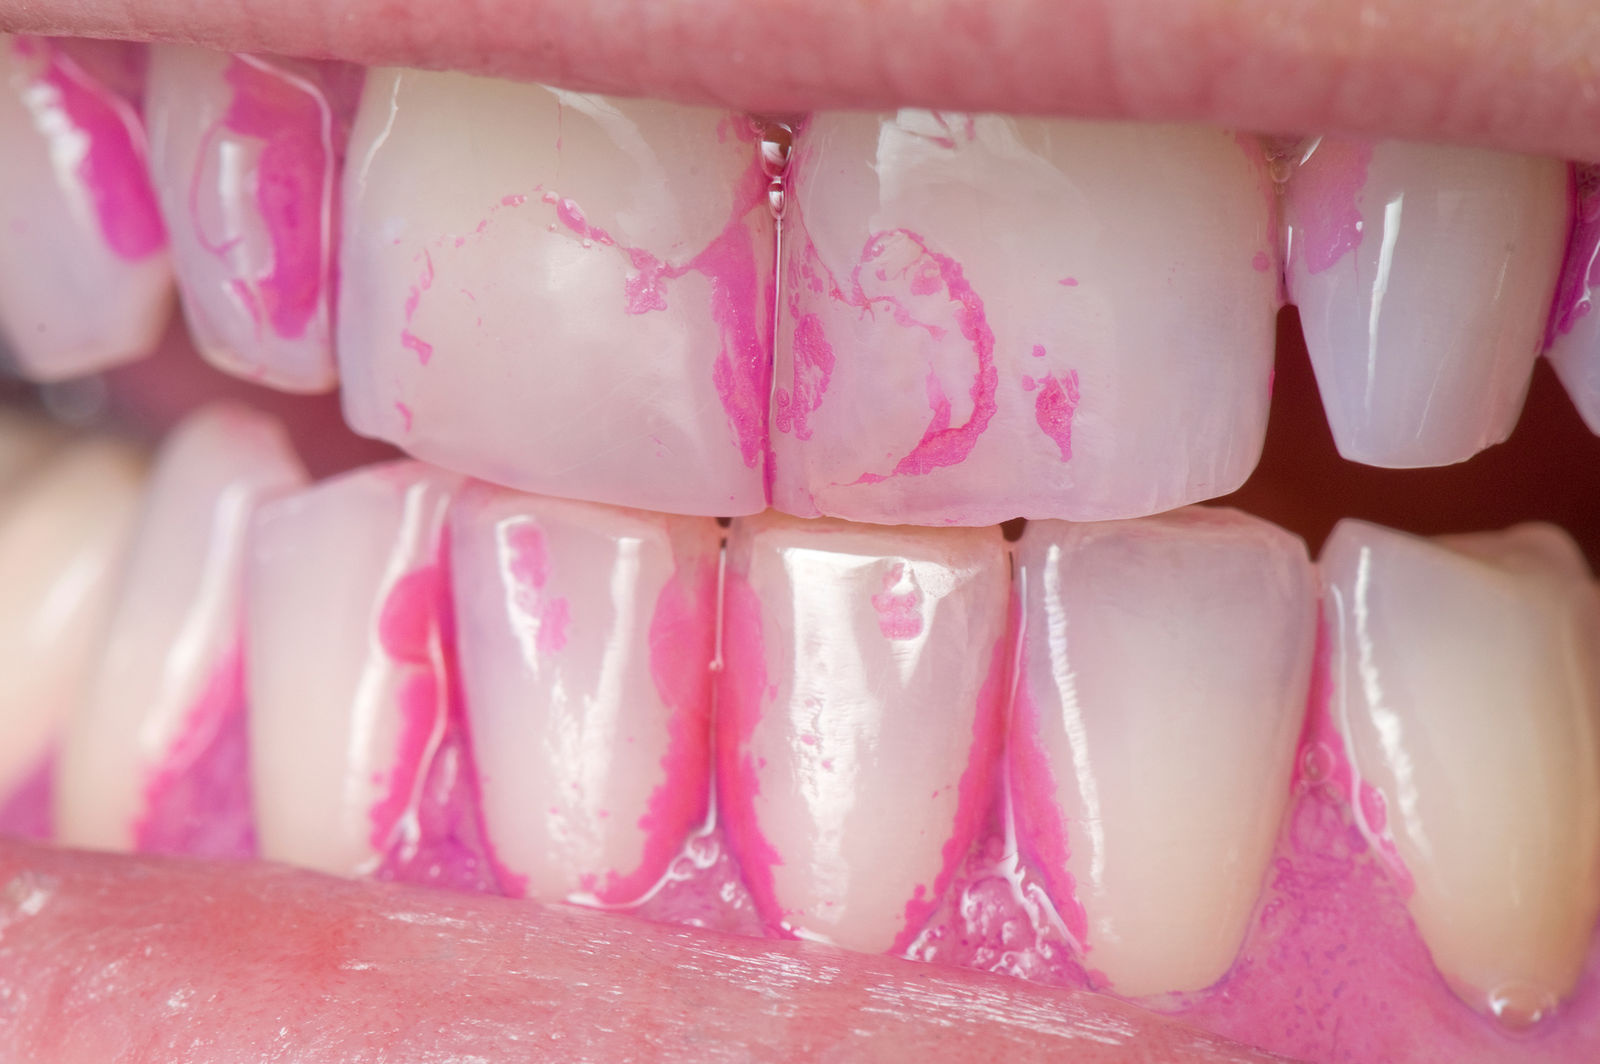 Гигиена полости рта. Метод первичной профилактики стоматологических заболеваний